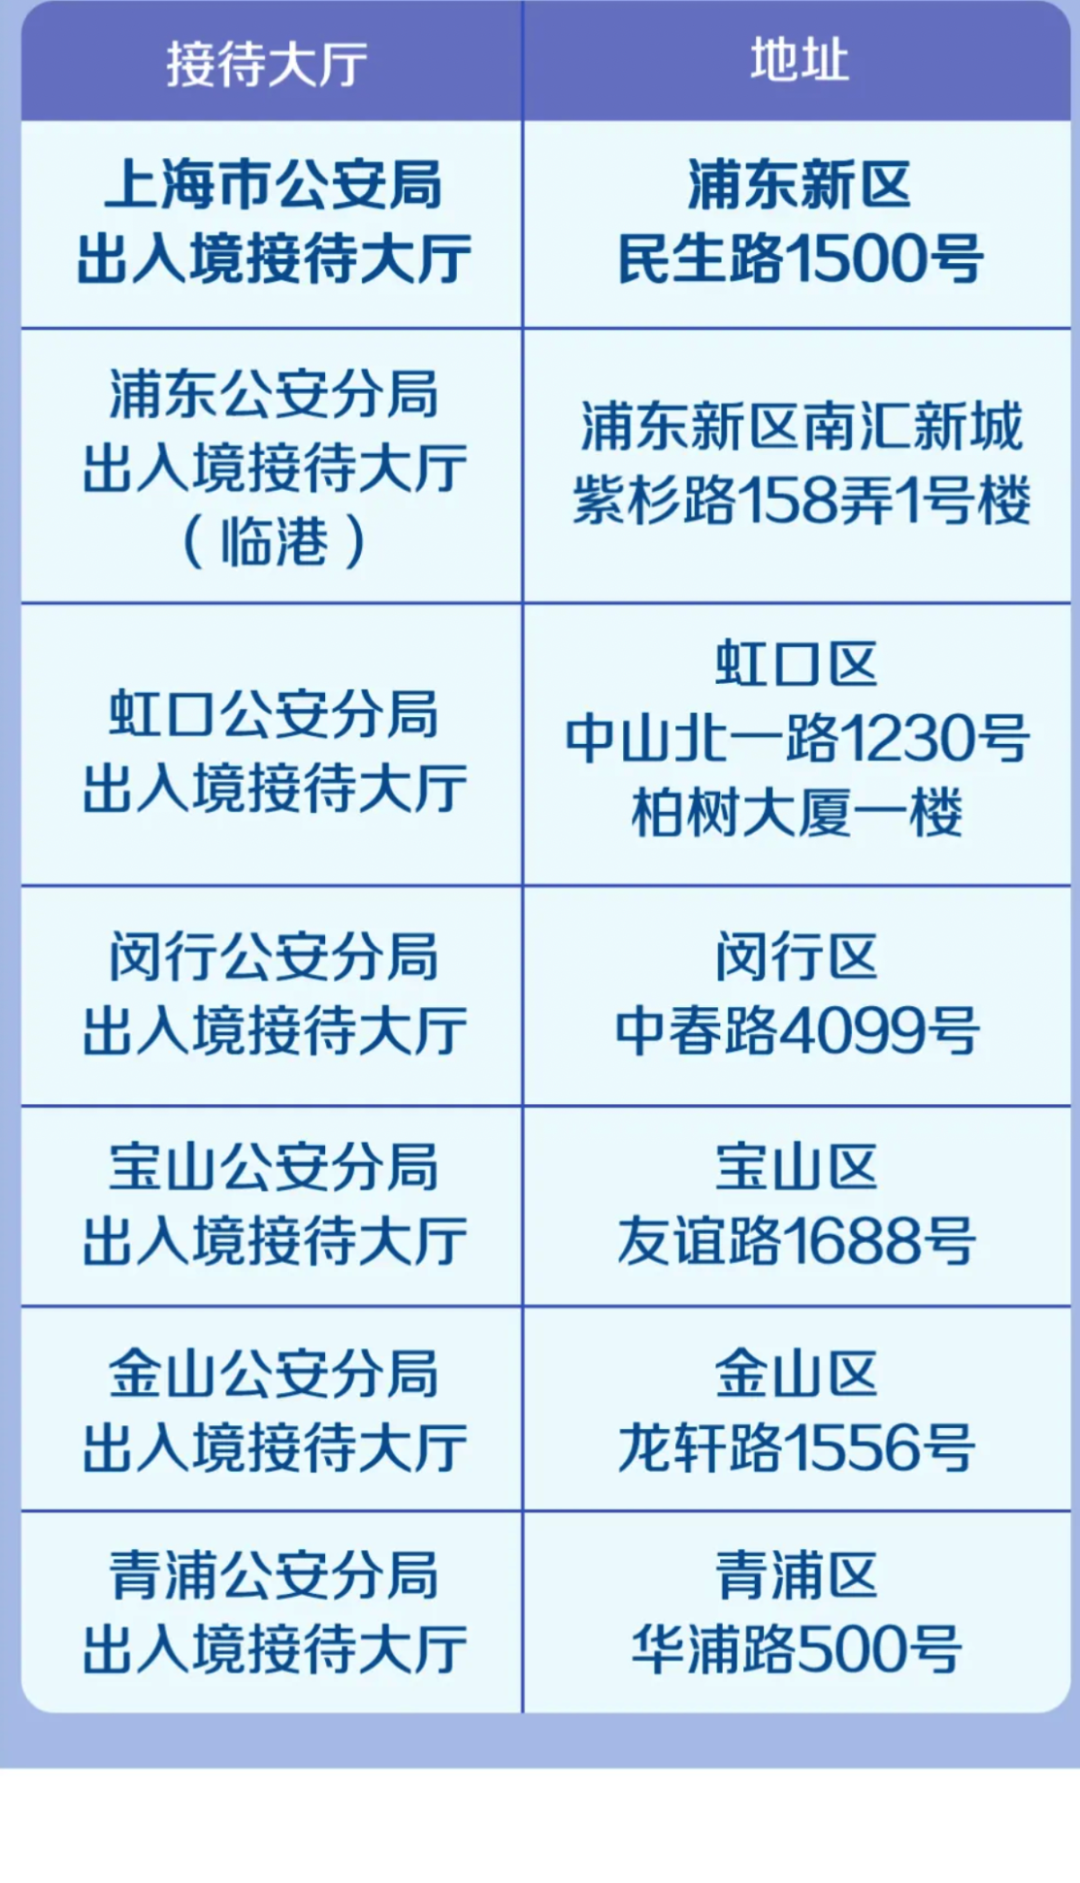 无需预约！上海这4天夜间也能办出入境证件！